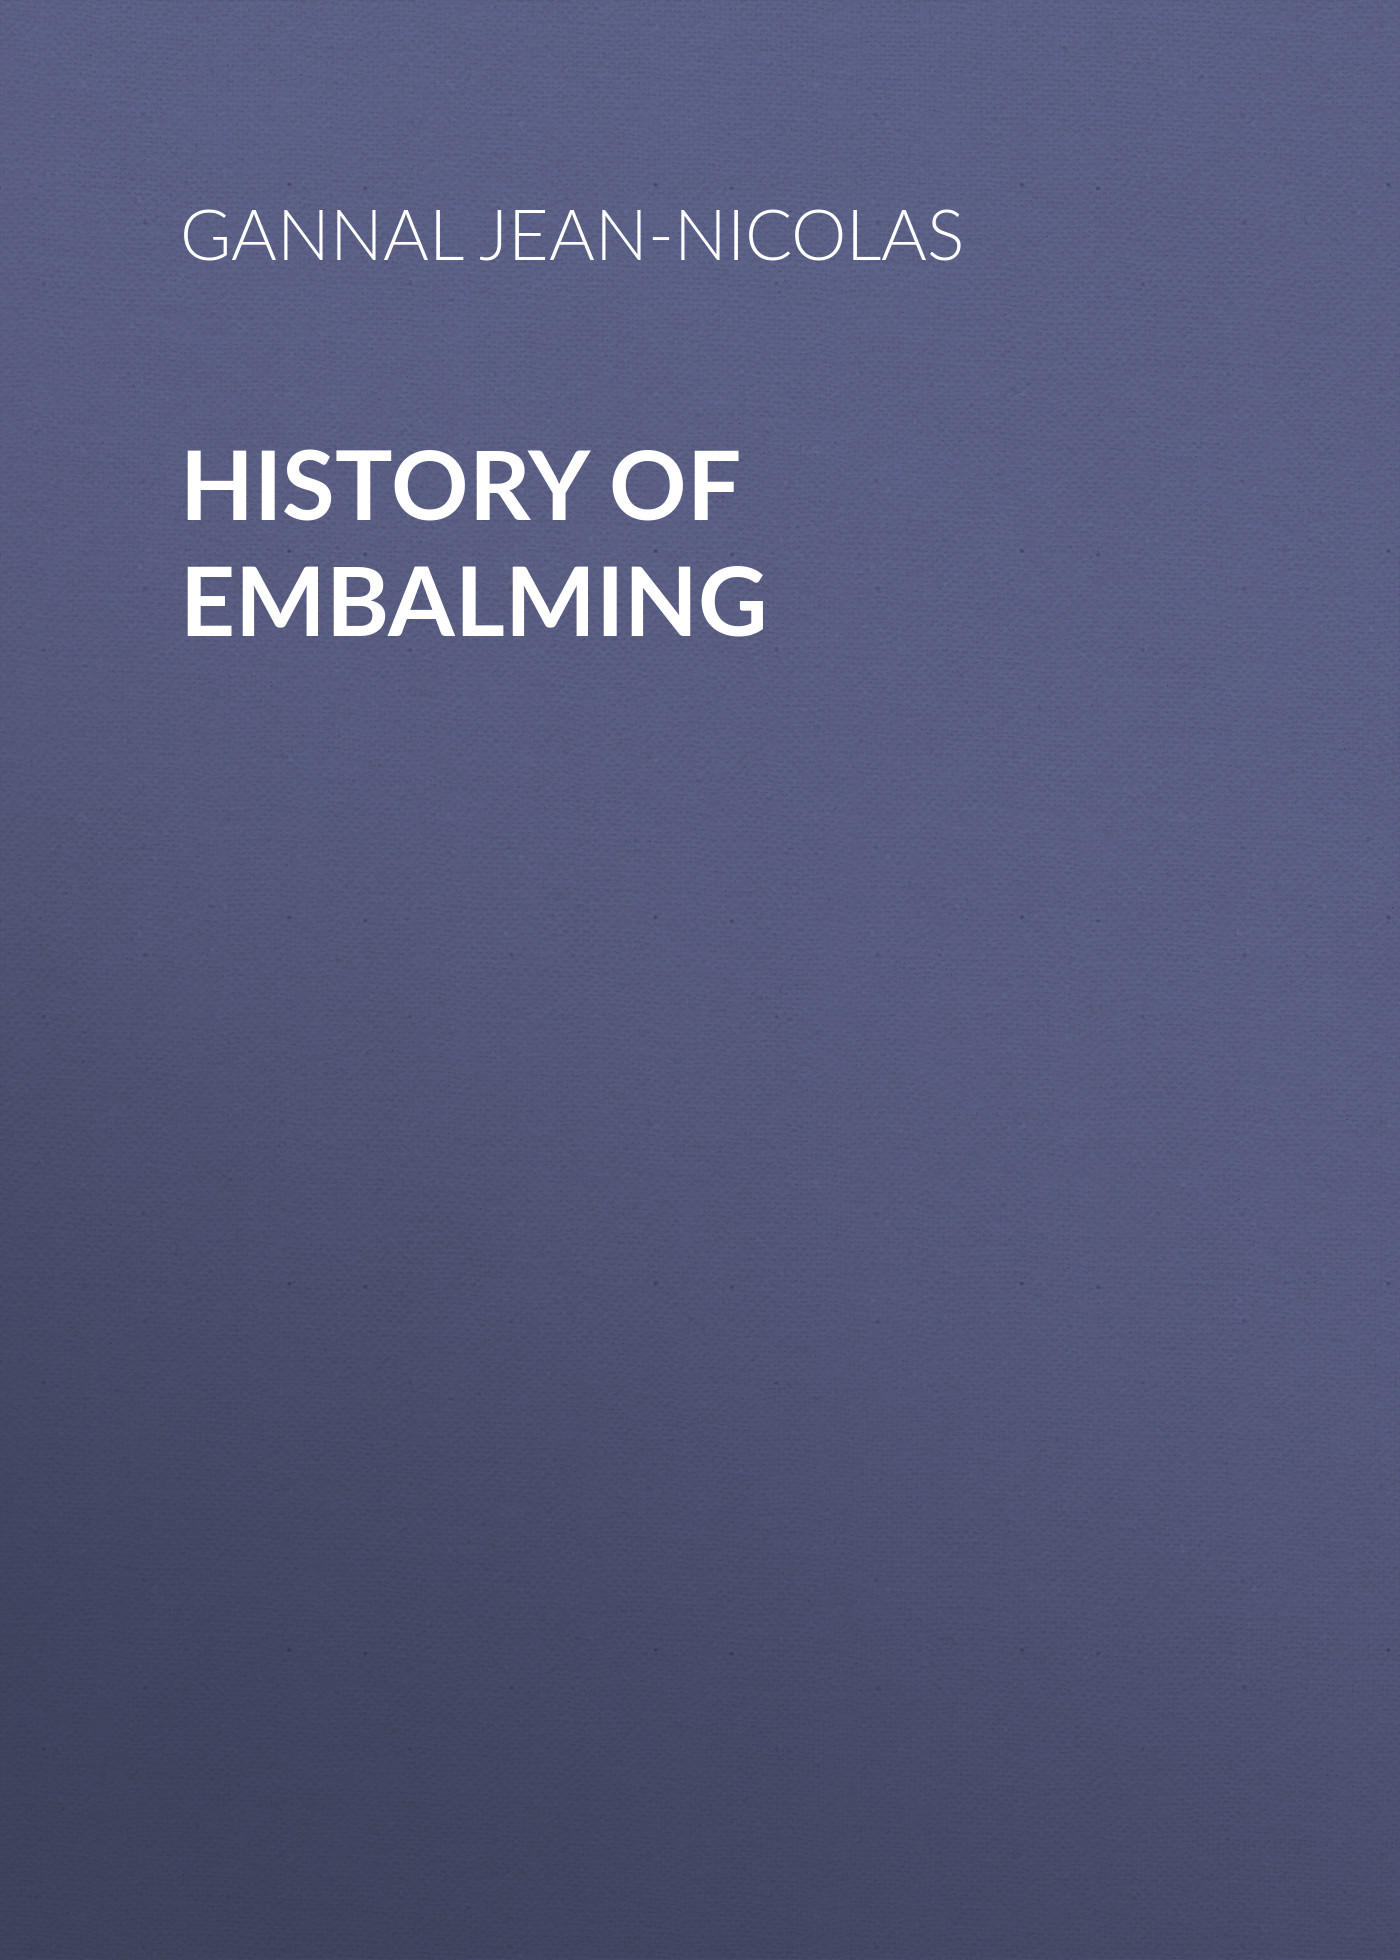 Книга History of Embalming из серии , созданная Jean-Nicolas Gannal, может относится к жанру Зарубежная старинная литература, Зарубежная классика. Стоимость электронной книги History of Embalming с идентификатором 24860475 составляет 0 руб.